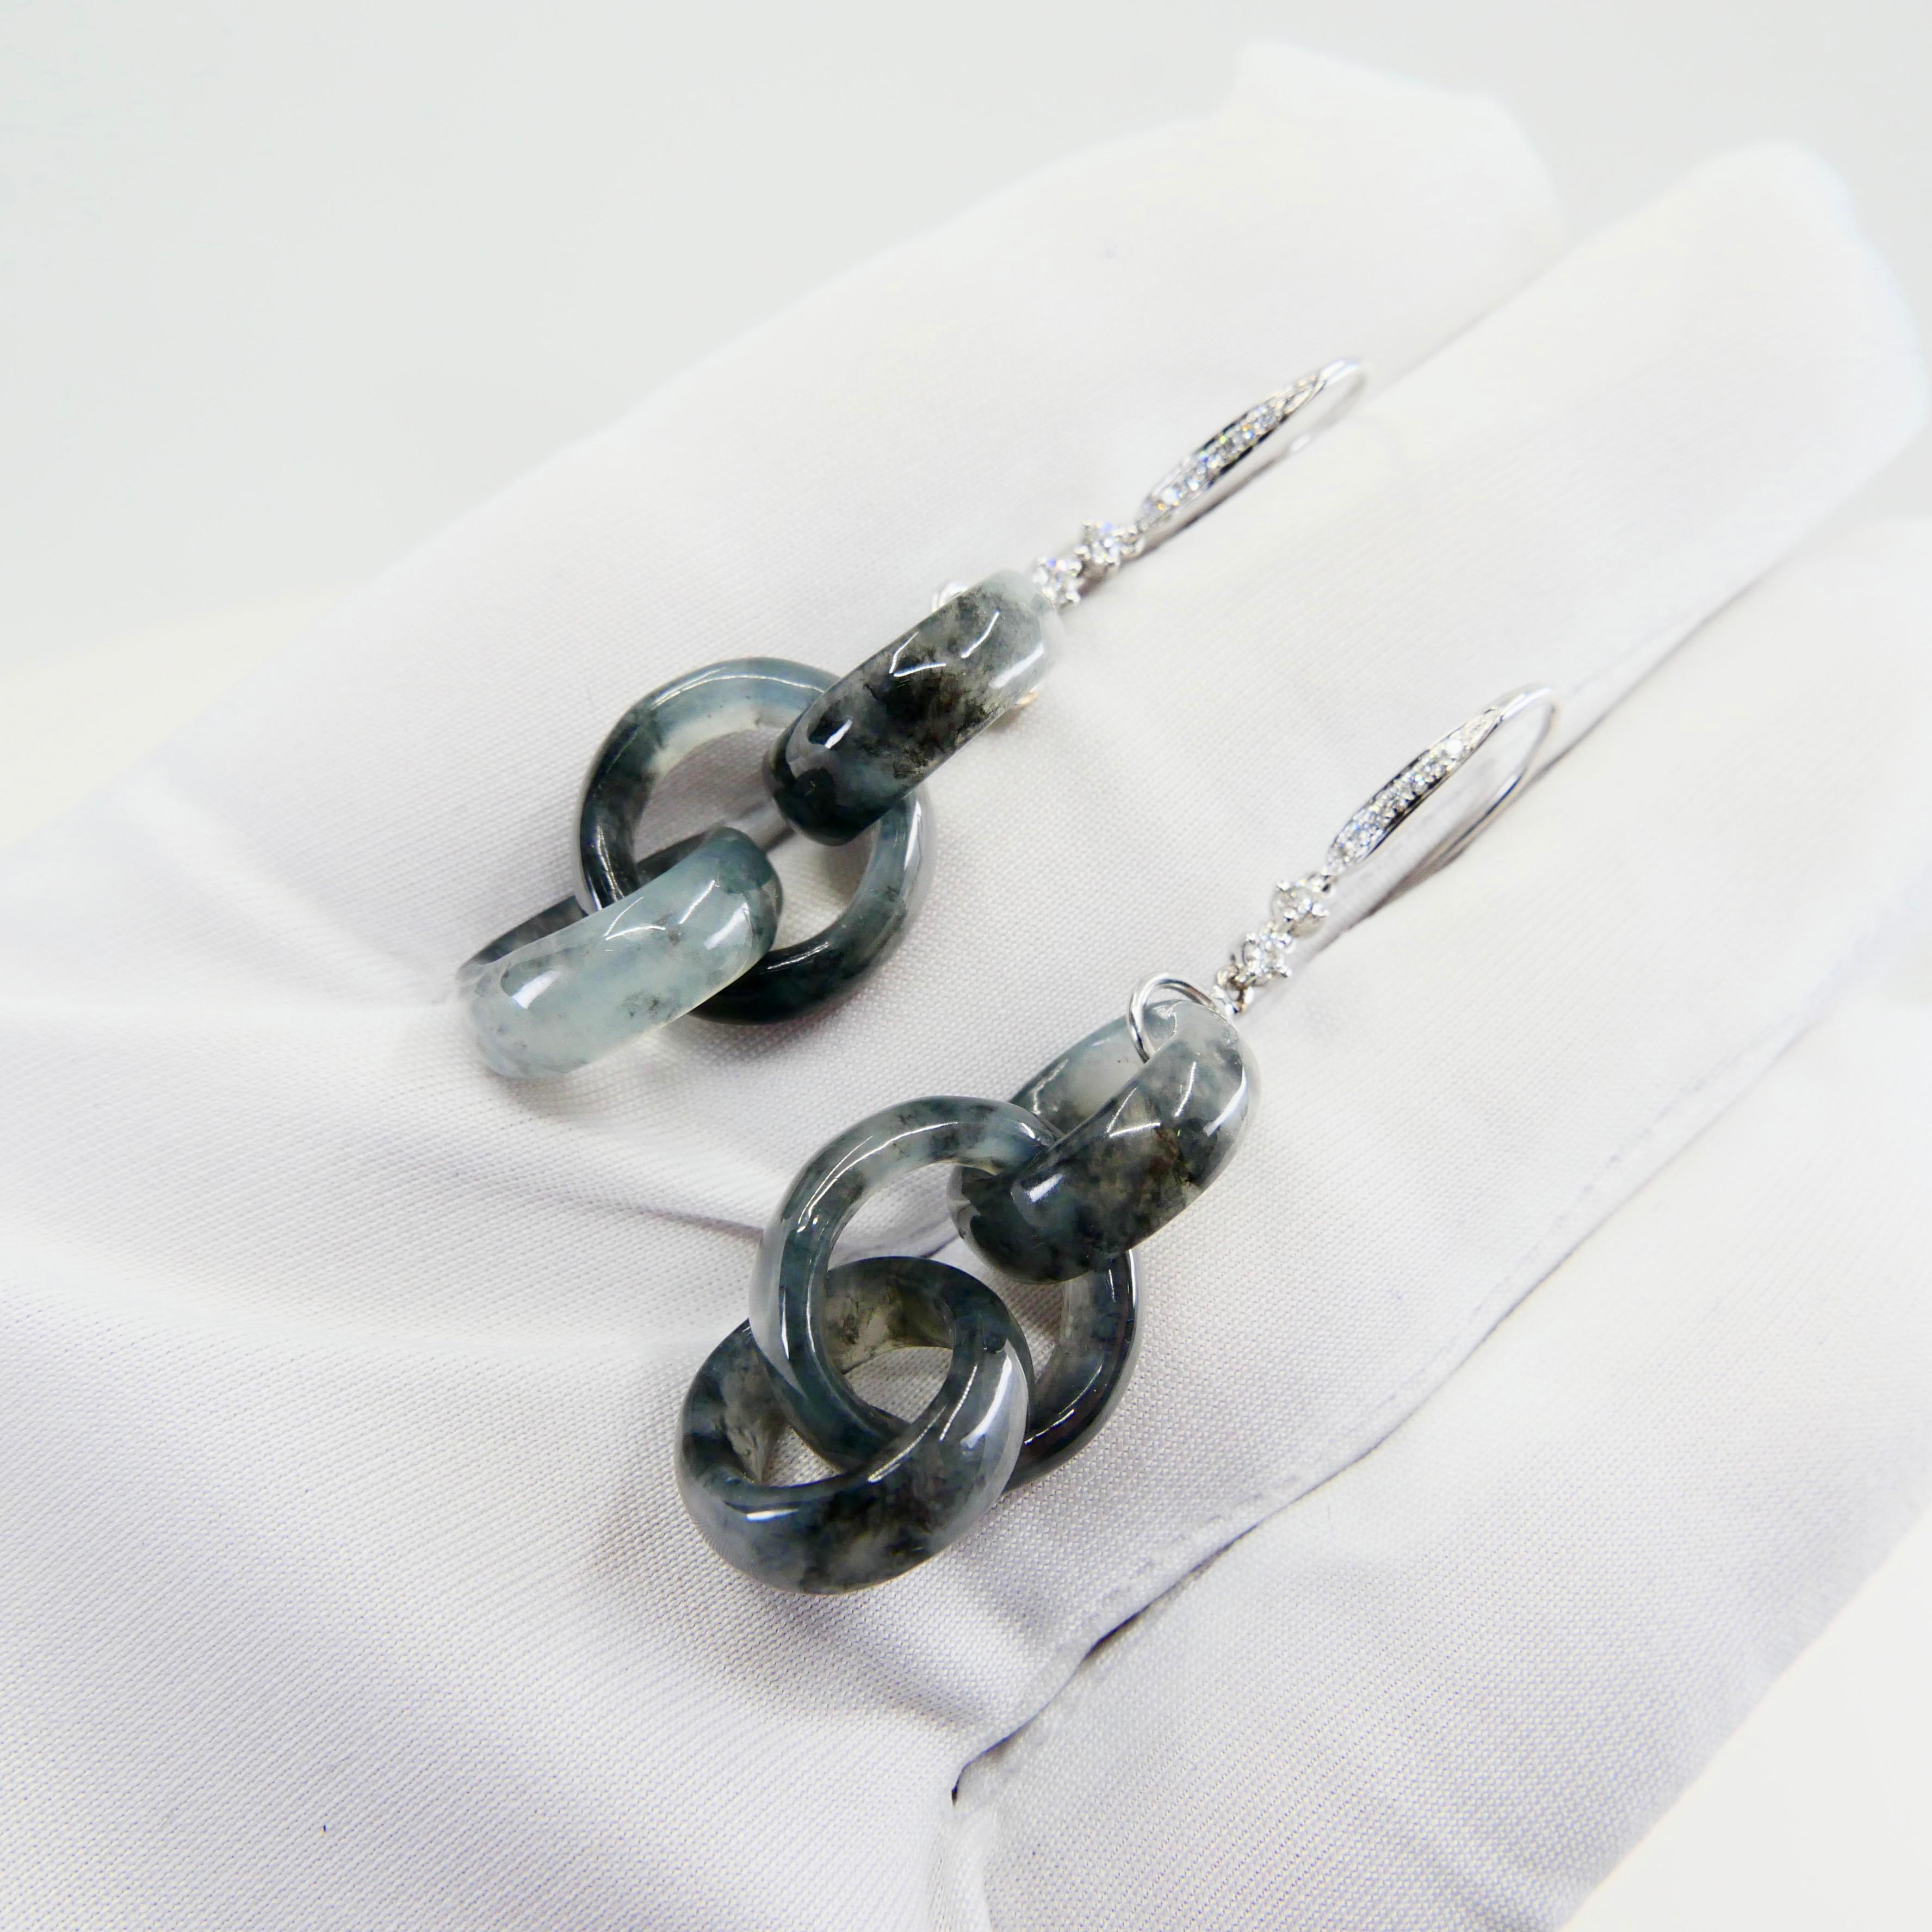 Certified Icy Black Jadeite Jade & Diamond Earrings, Solid Interlocking Links 1